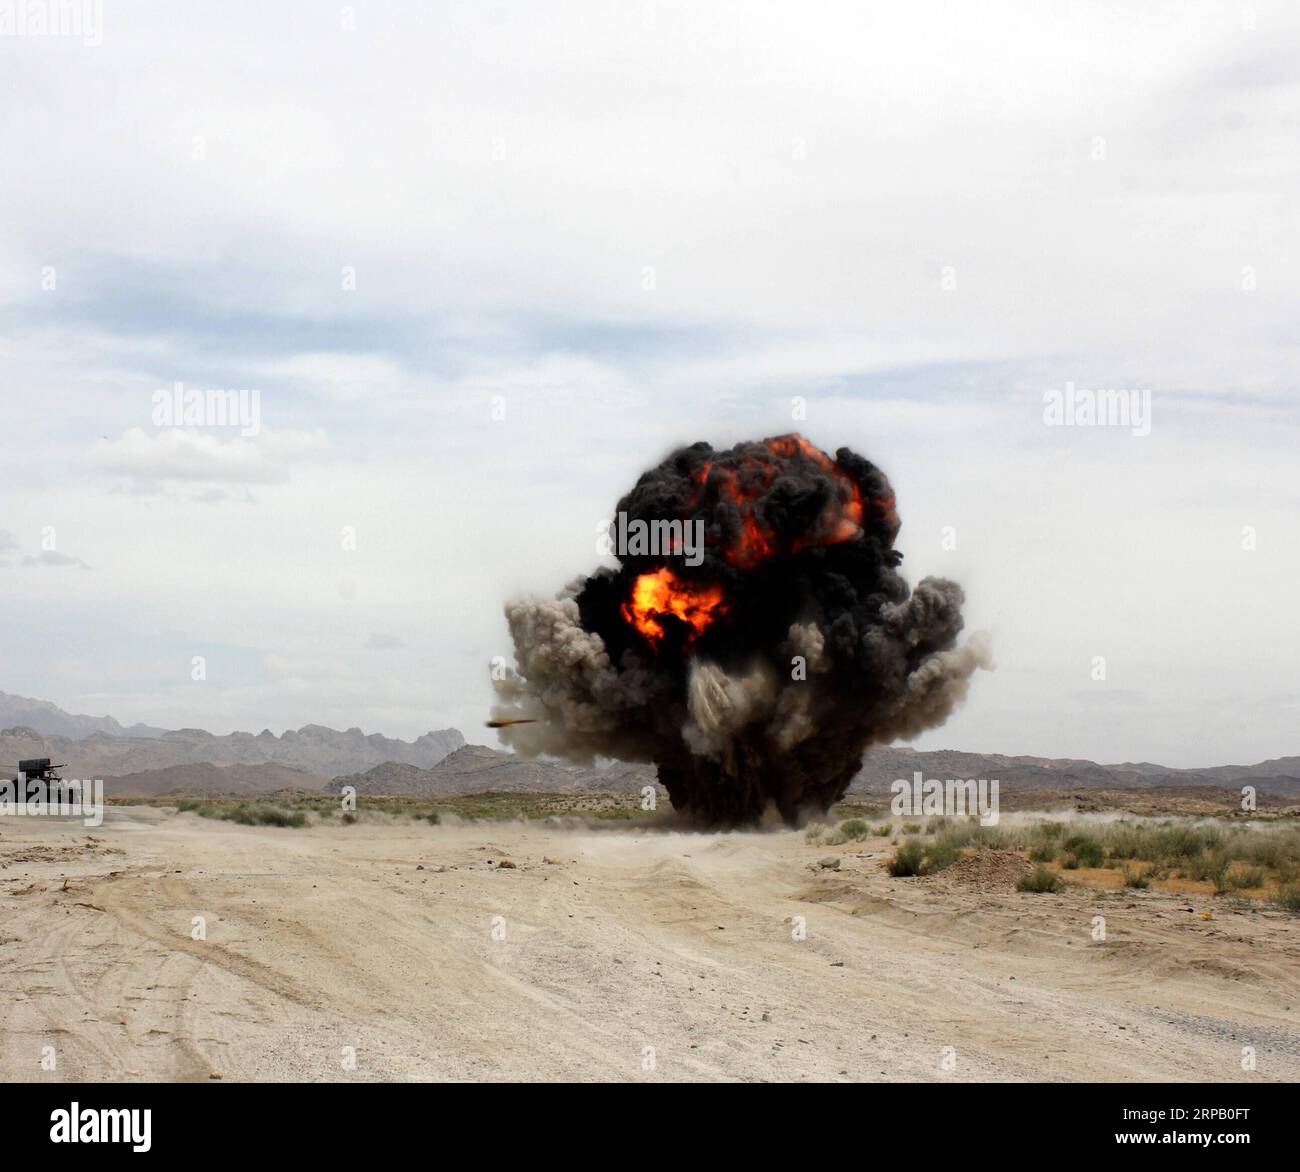 190523 -- KANDAHAR, le 23 mai 2019 -- une photo prise le 22 mai 2019 montre que de la fumée monte après avoir désamorcé une mine terrestre lors d'une opération militaire contre des militants talibans dans le district de Shahwalikot, dans la province de Kandahar, en Afghanistan. AFGHANISTAN-KANDAHAR-OPÉRATION MILITAIRE SanaulahxSeiam PUBLICATIONxNOTxINxCHN Banque D'Images